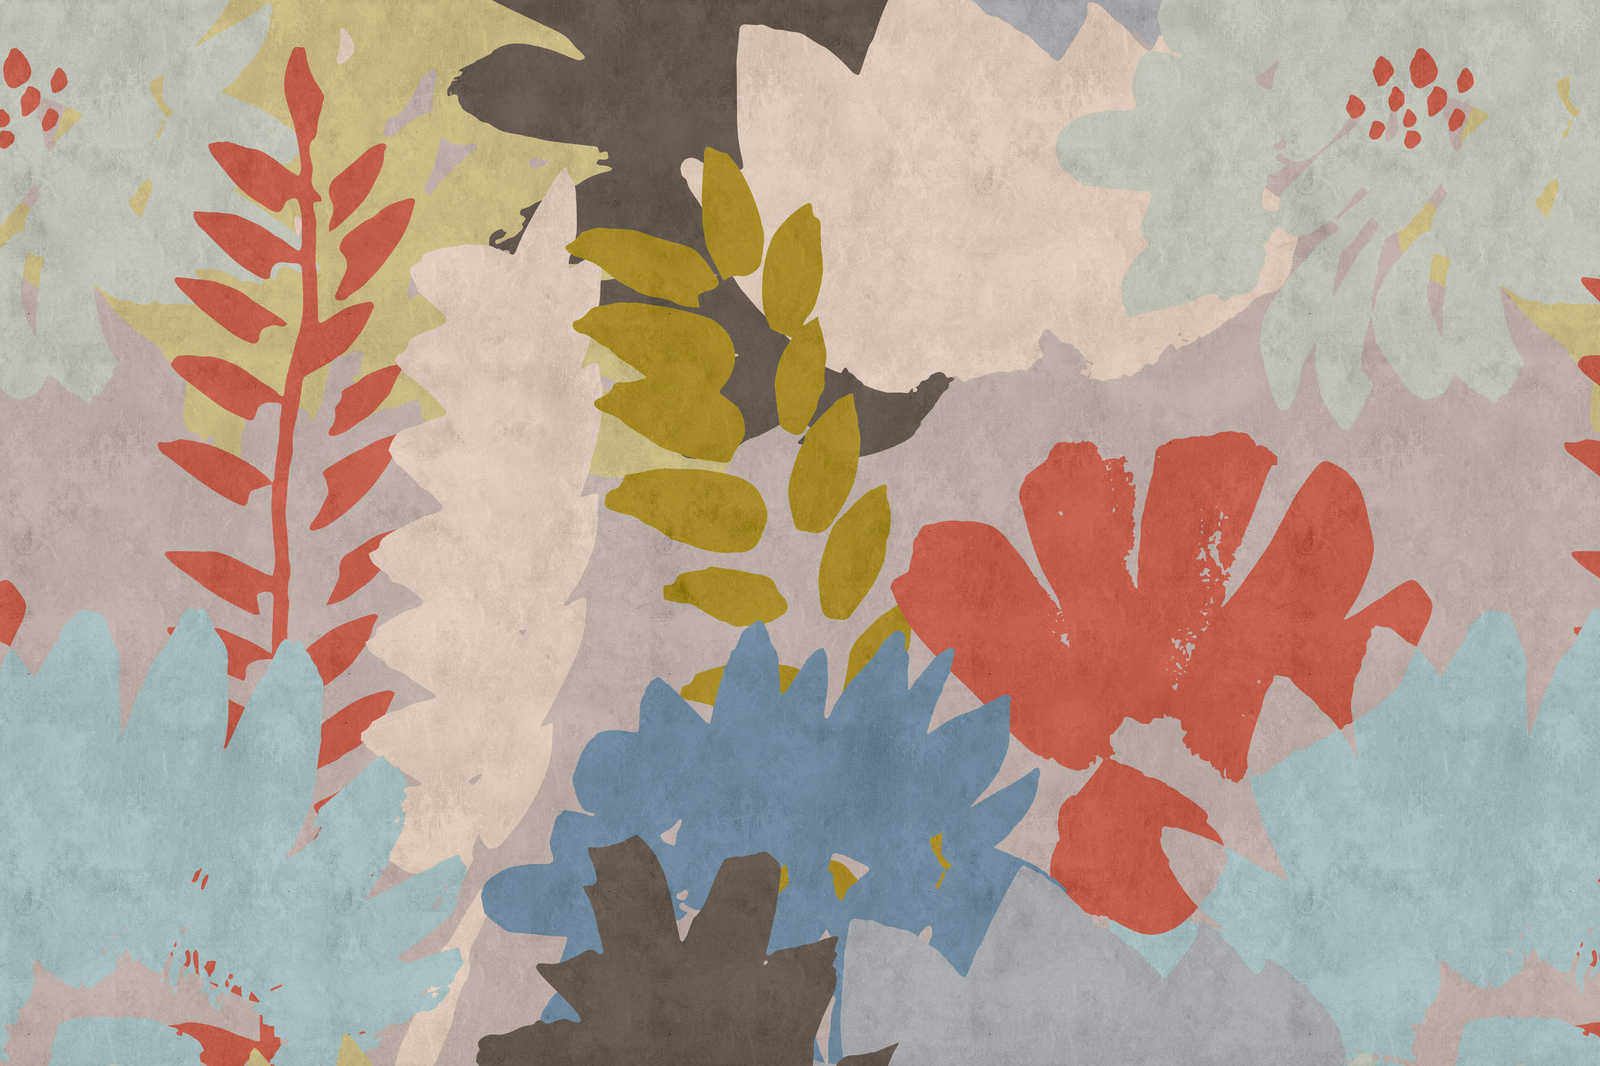             Collage floral 3 - Cuadro abstracto en lienzo con estructura de papel secante y motivo de hojas - 0,90 m x 0,60 m
        